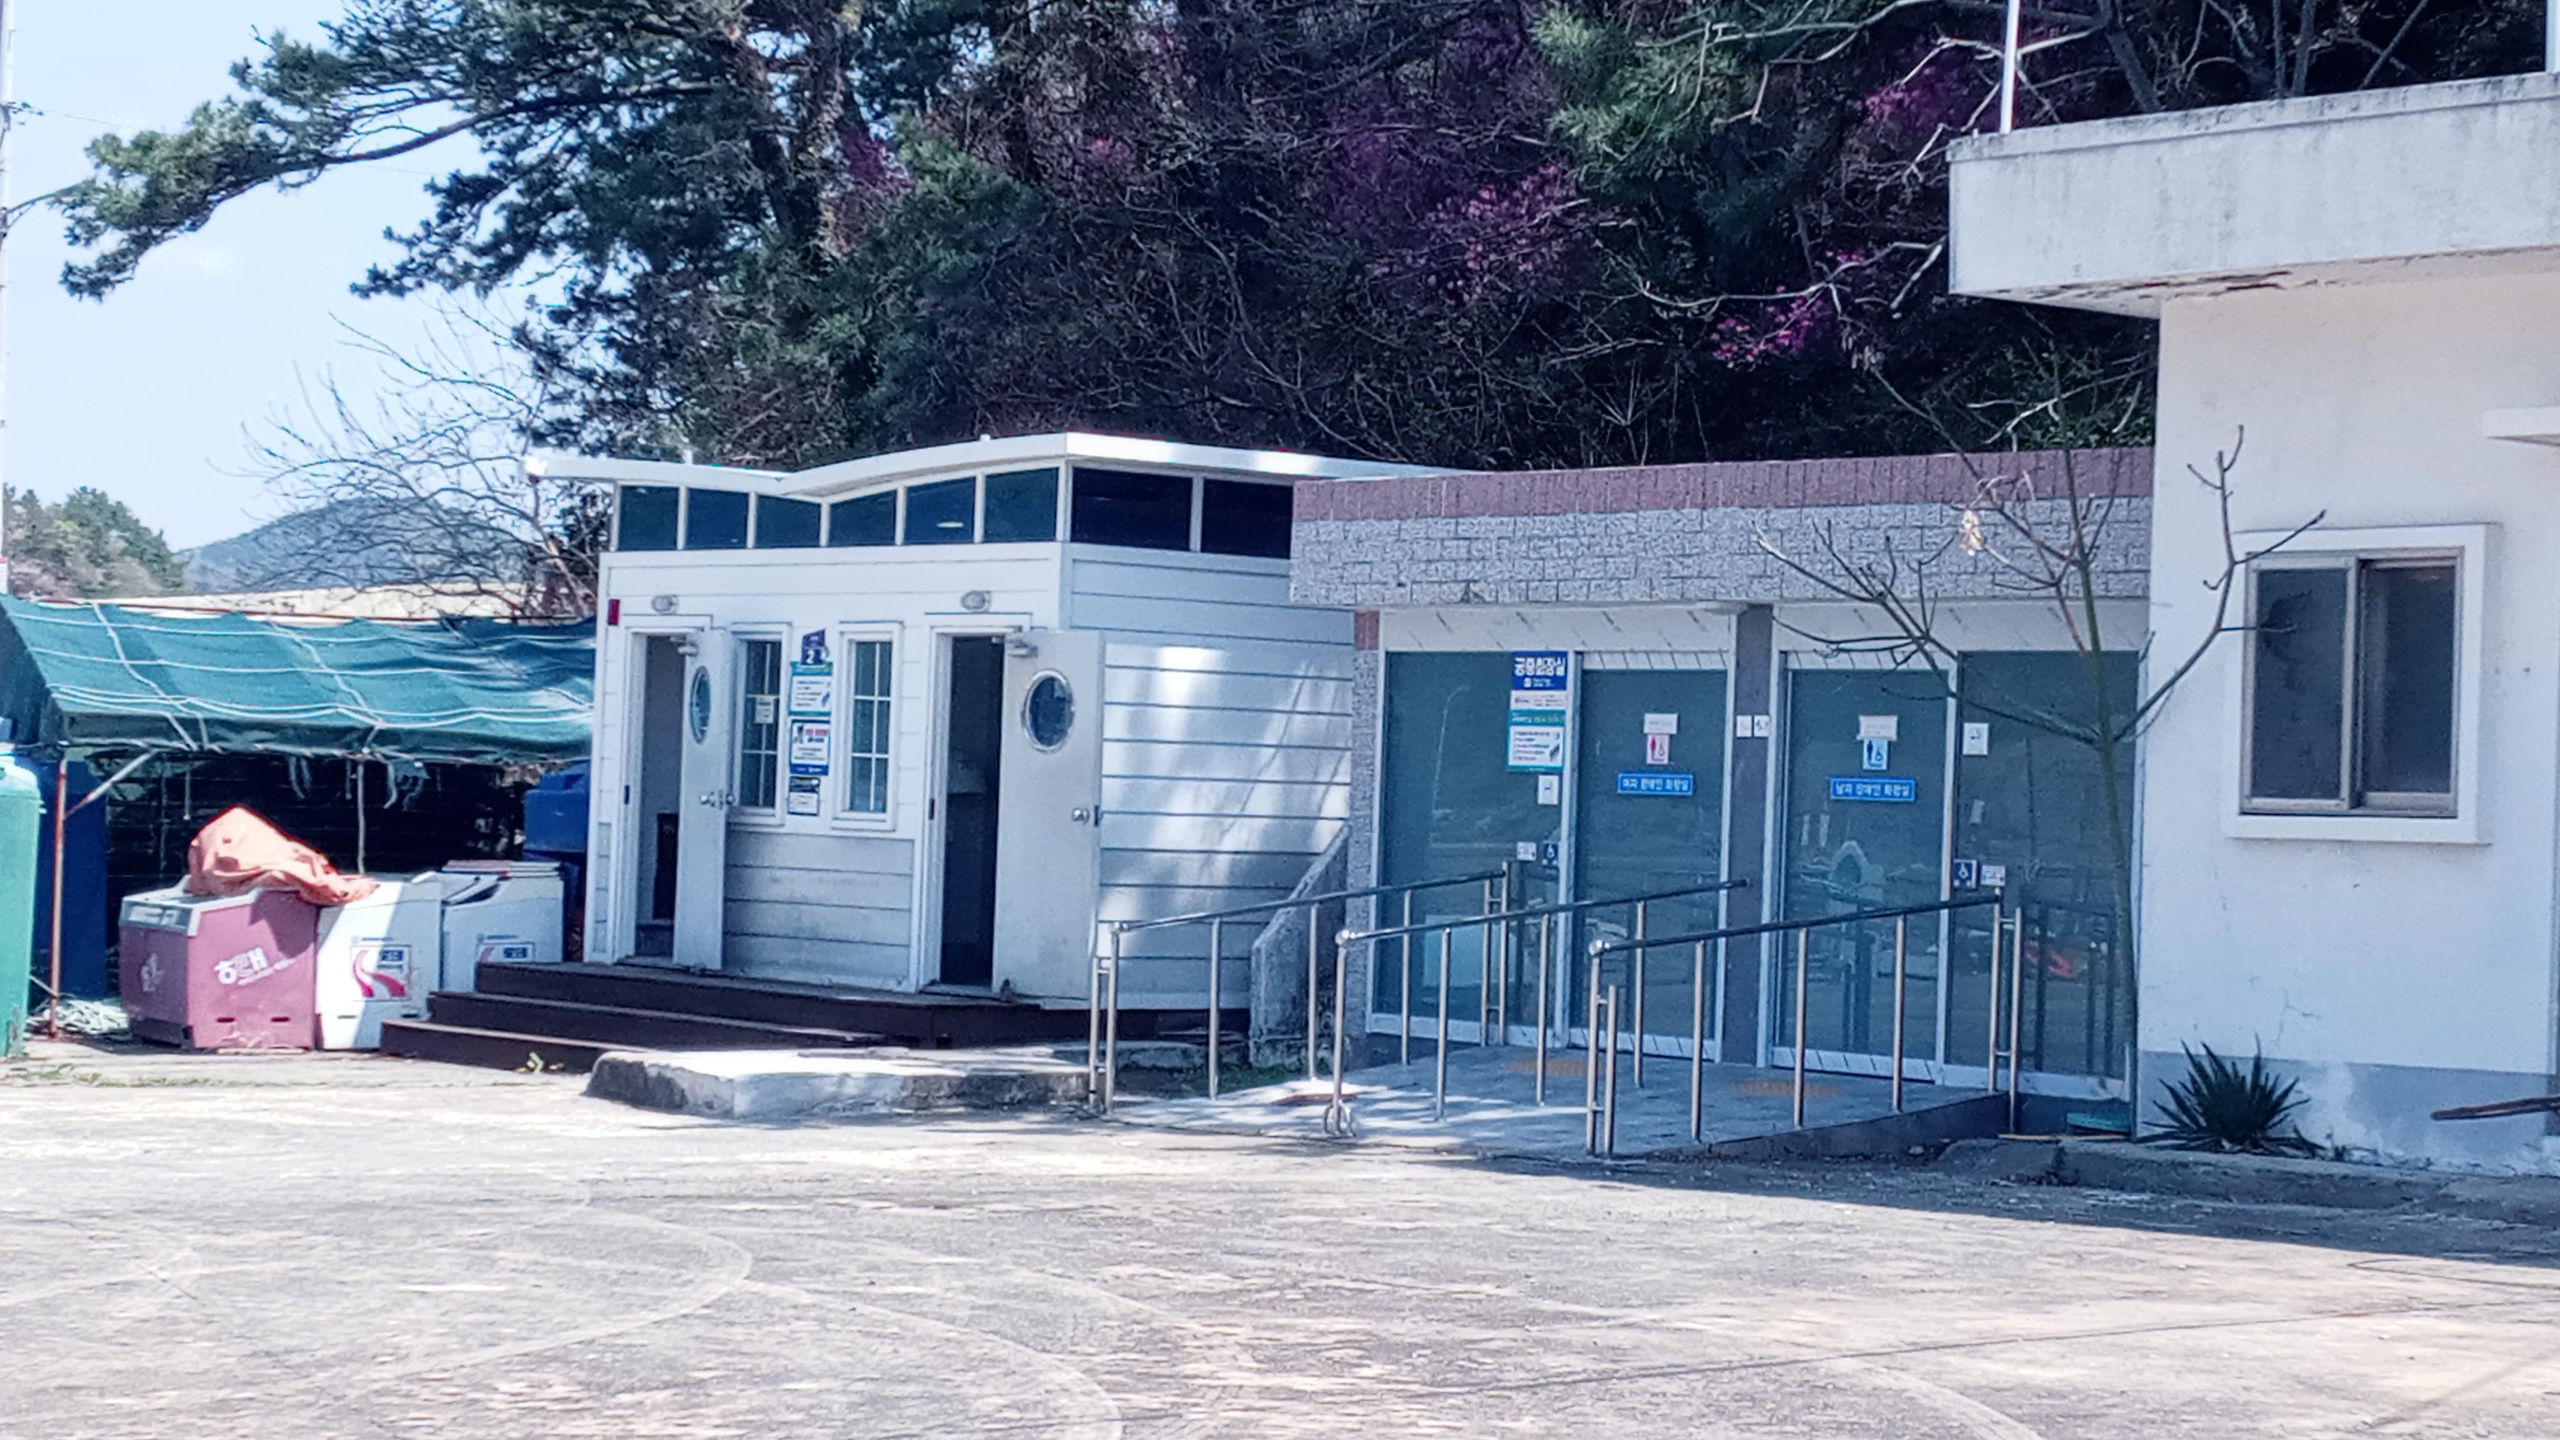 우도섬 우도마을회관 인접 공중화장실 외벽 지붕에 큰 화장실 표지판 설치 제안   본문  1번째 이미지입니다.